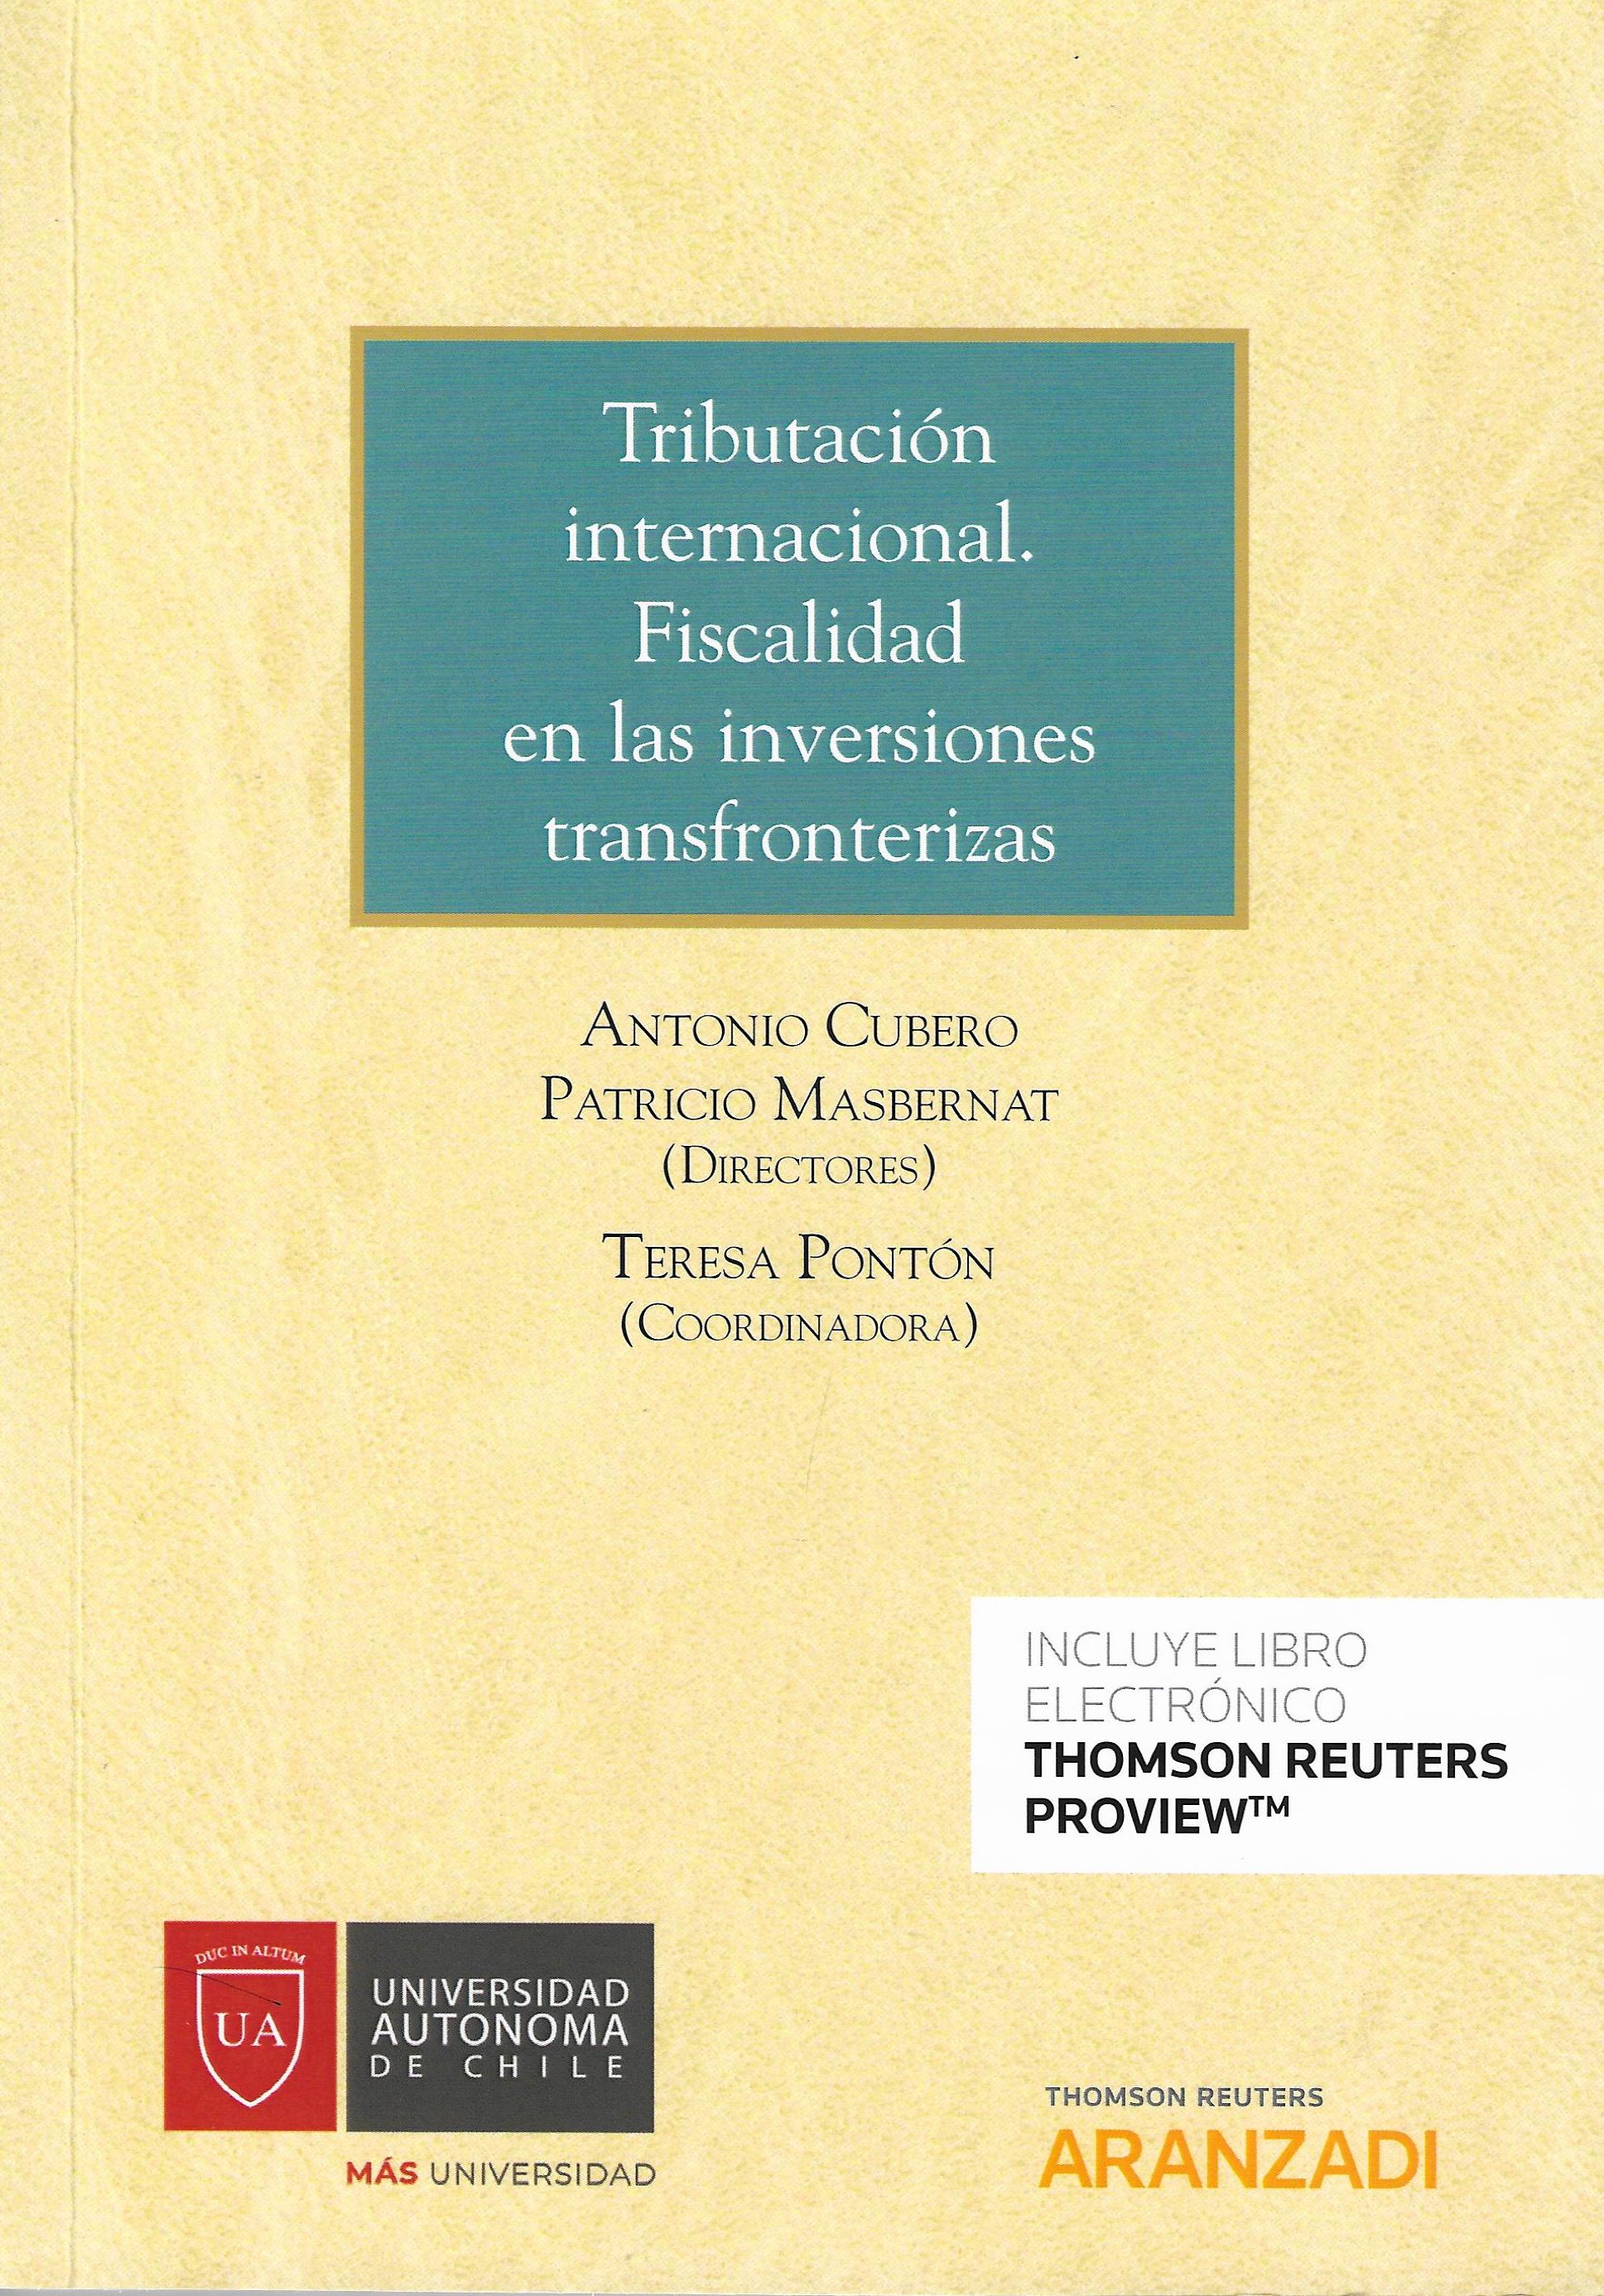 Imagen de portada del libro Tributación internacional. Fiscalidad en las inversiones transfronterizas